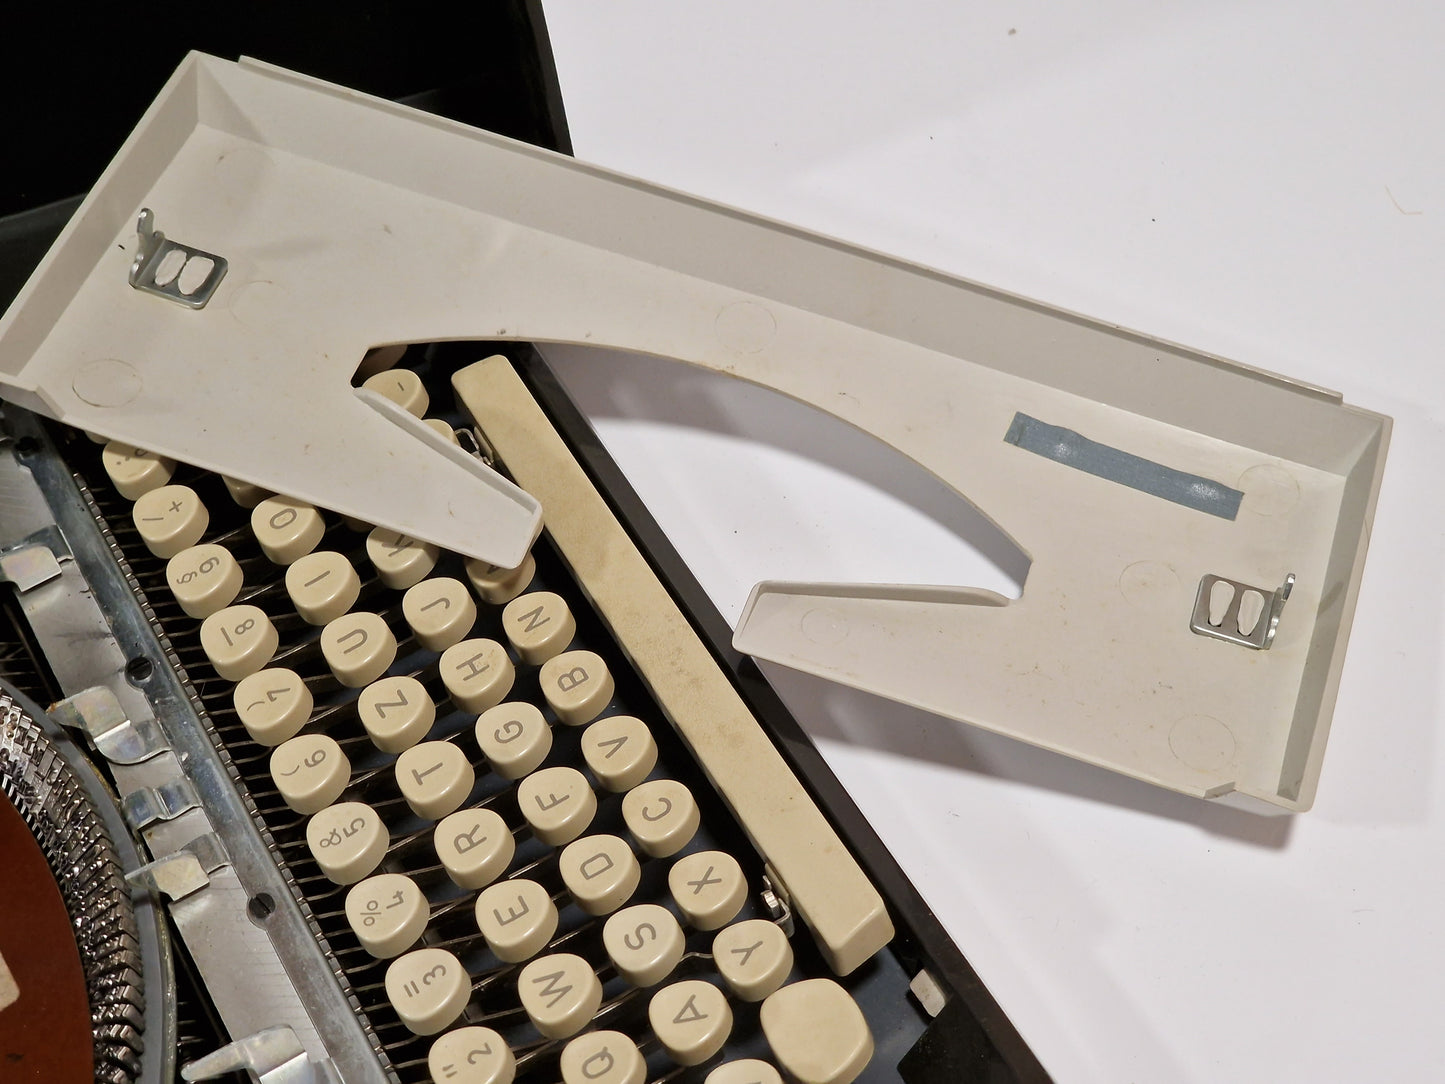 Alte Reiseschreibmaschine Koffer Schreibmaschine Adler Tippa S schwarz